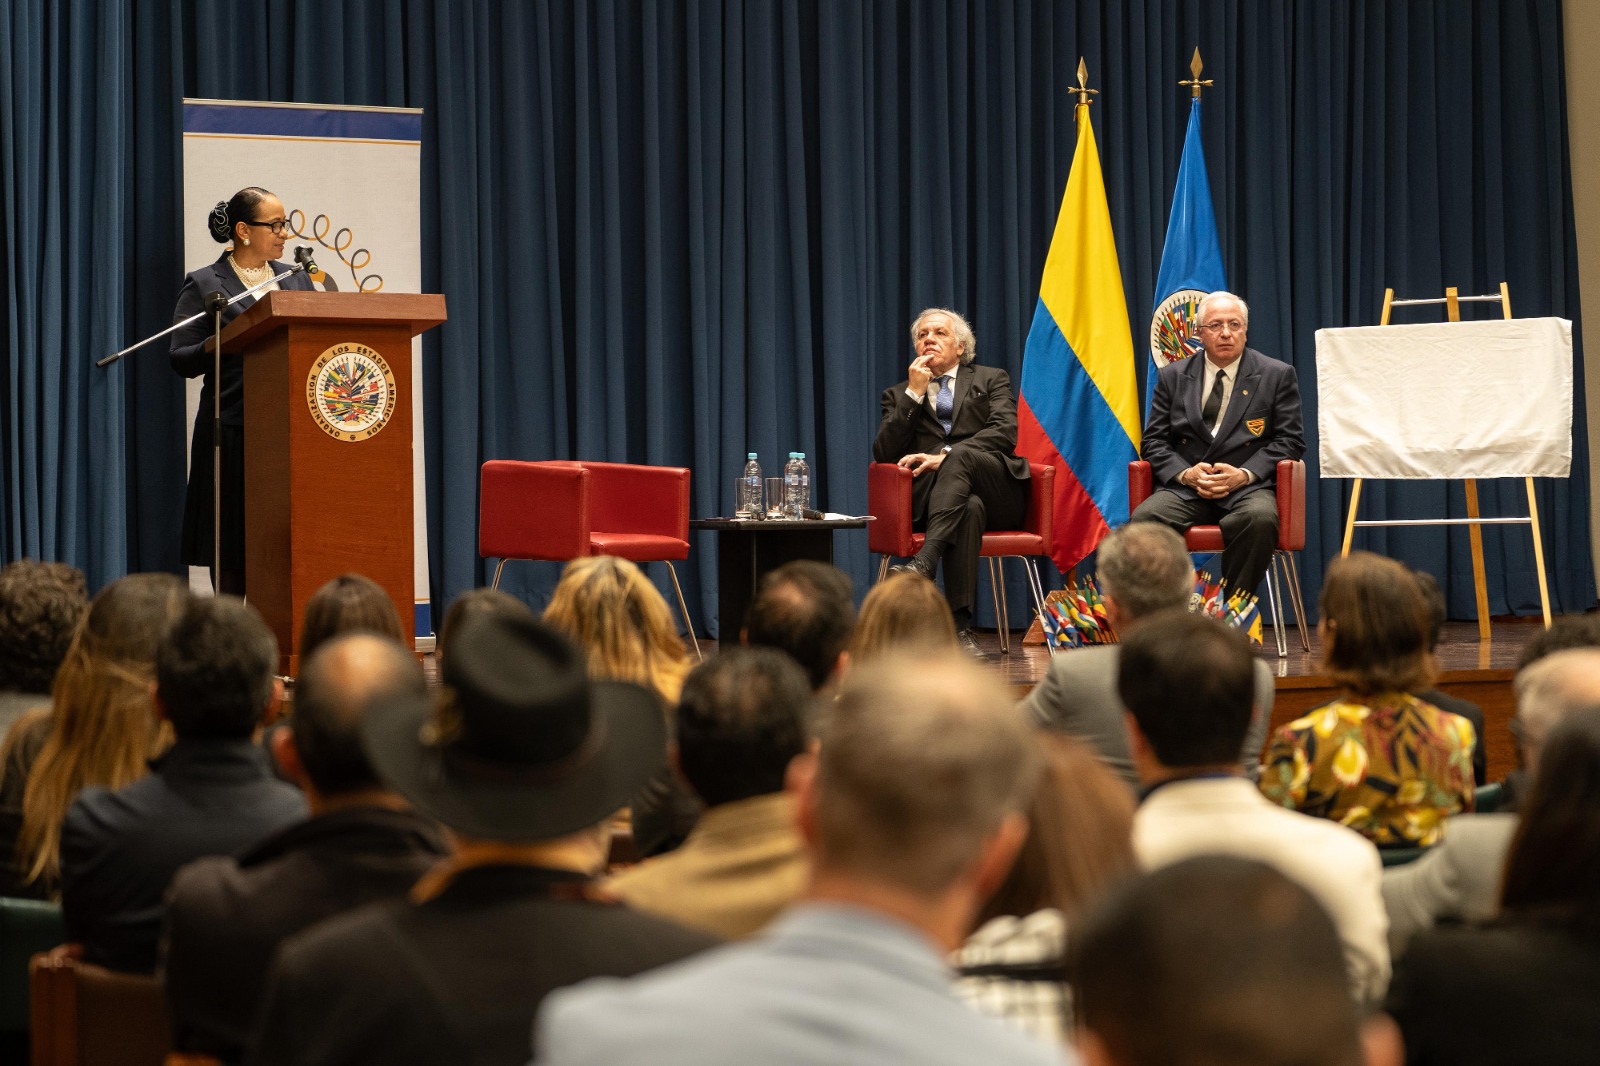 Conmemoración de los 76 años de la firma de la Carta de Bogotá y los 20 Años de la MAPP/OEA en Colombia con la participación de la Viceministra de Asuntos Multilaterales, Elizabeth Taylor, y el Secretario General de la OEA, Luis Almagro